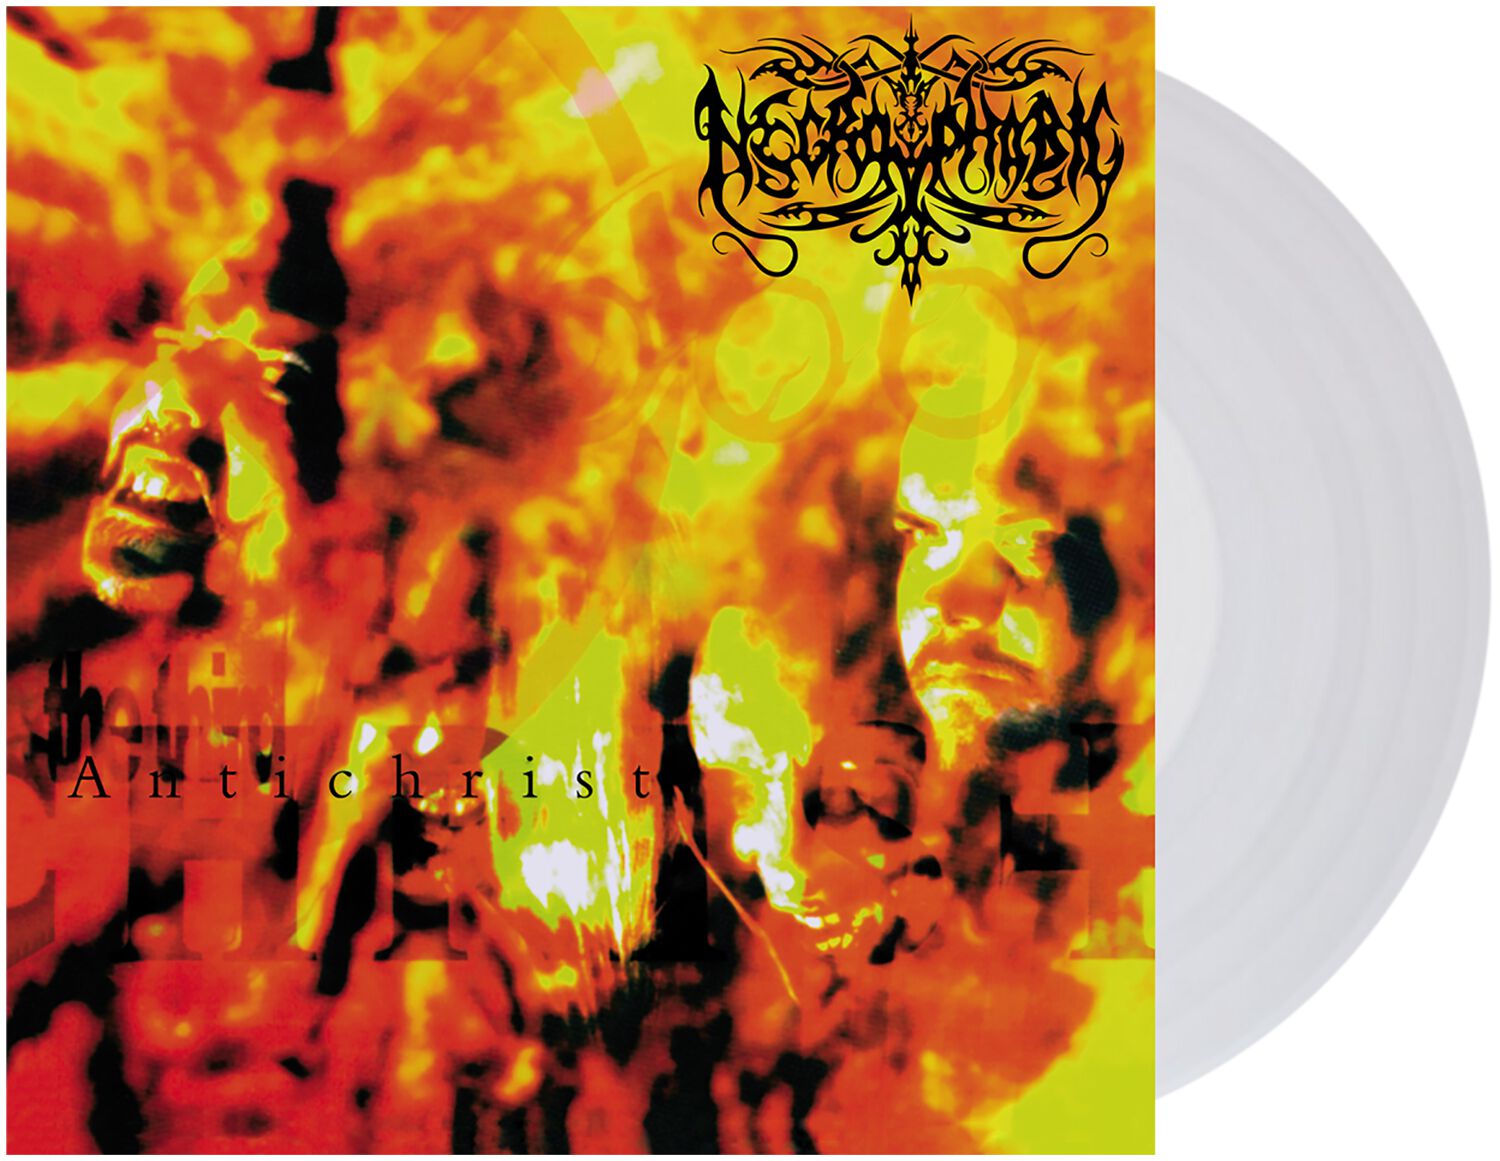 The third antichrist von Necrophobic - LP (Coloured, Limited Edition, Re-Release, Standard)